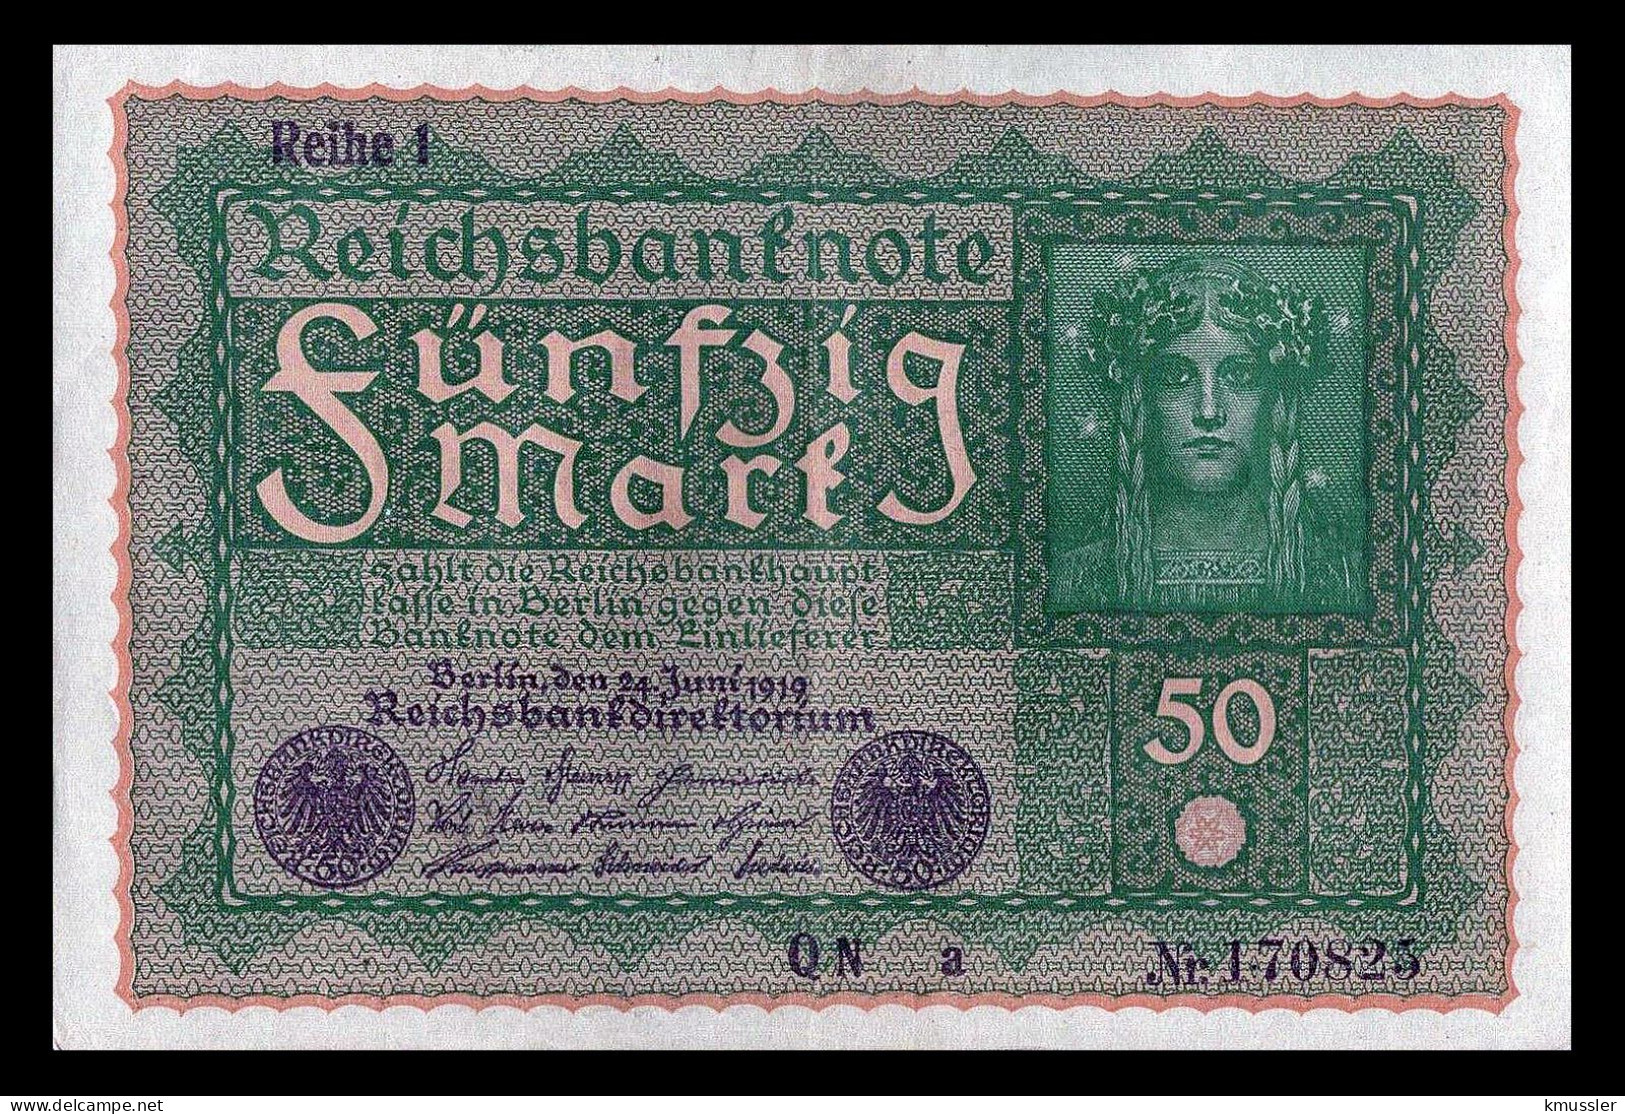 # # # Banknote Deutsches Reich (Germany) 50 Mark 1919 AU # # # - 50 Mark